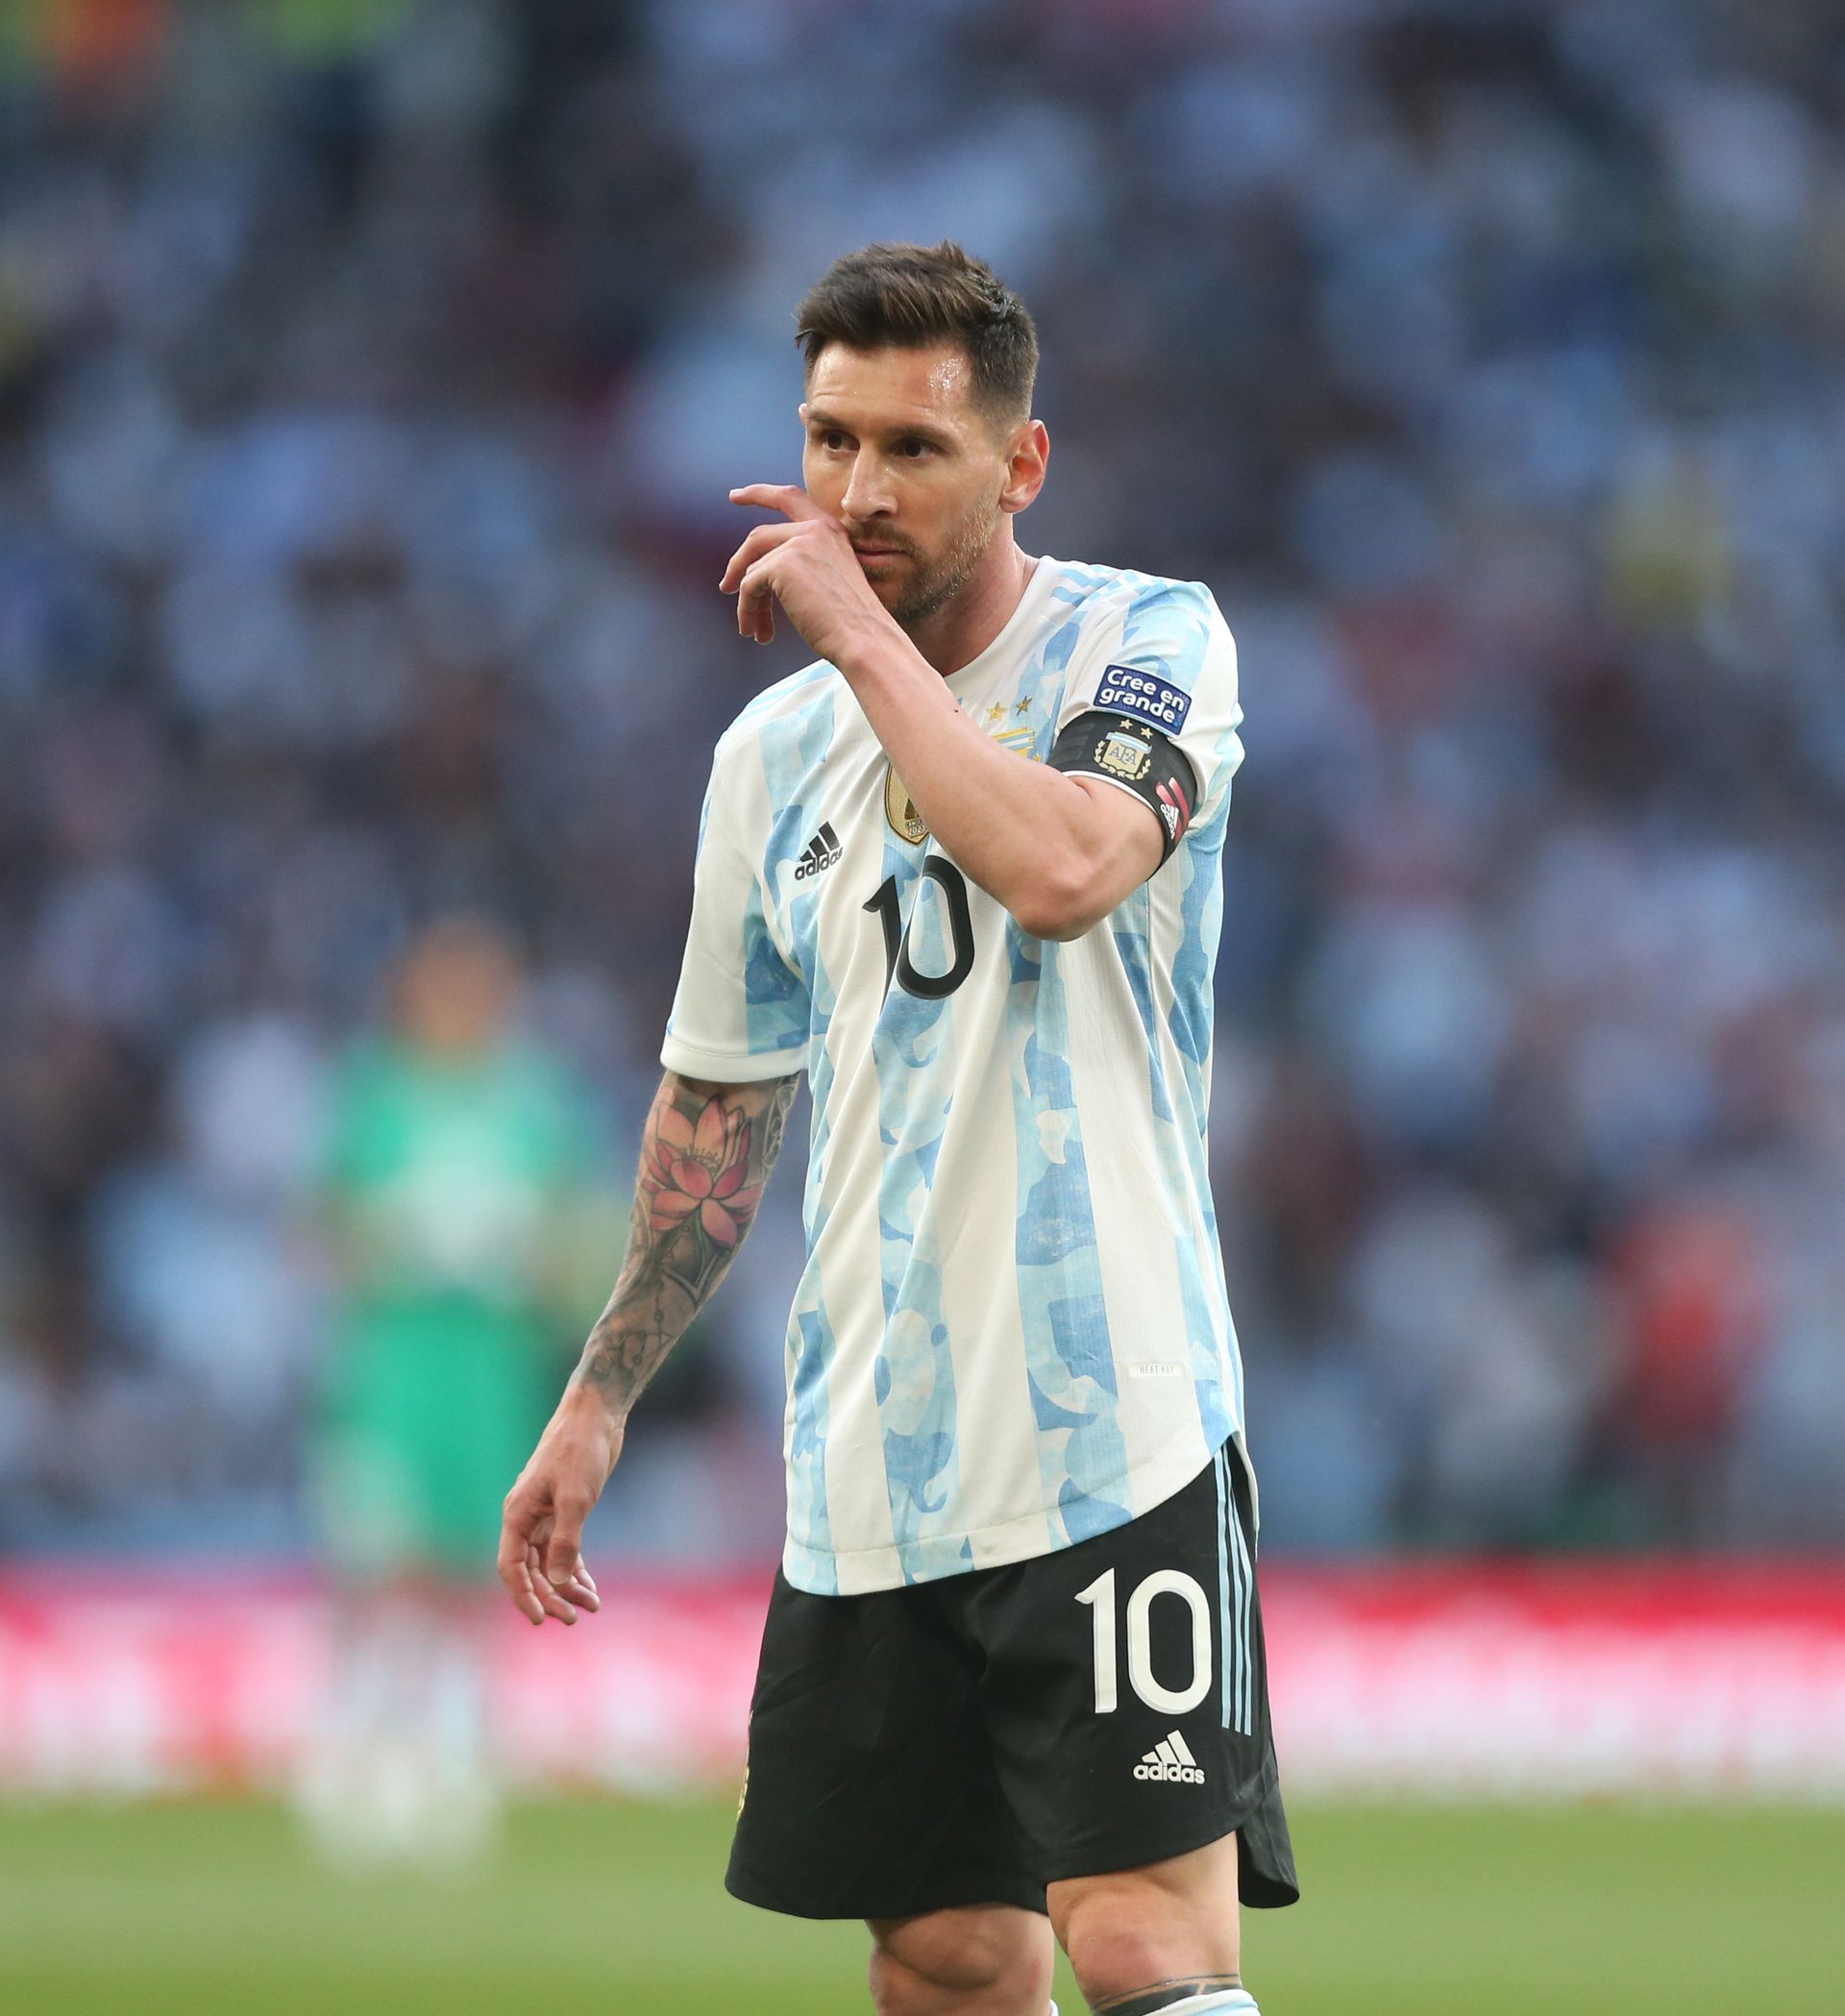 Messi hétszer lett aranylabdás, de már 34 éves, azaz a sikerei ellenére az értéke folyamatosan csökken / Fotó: GettyImages